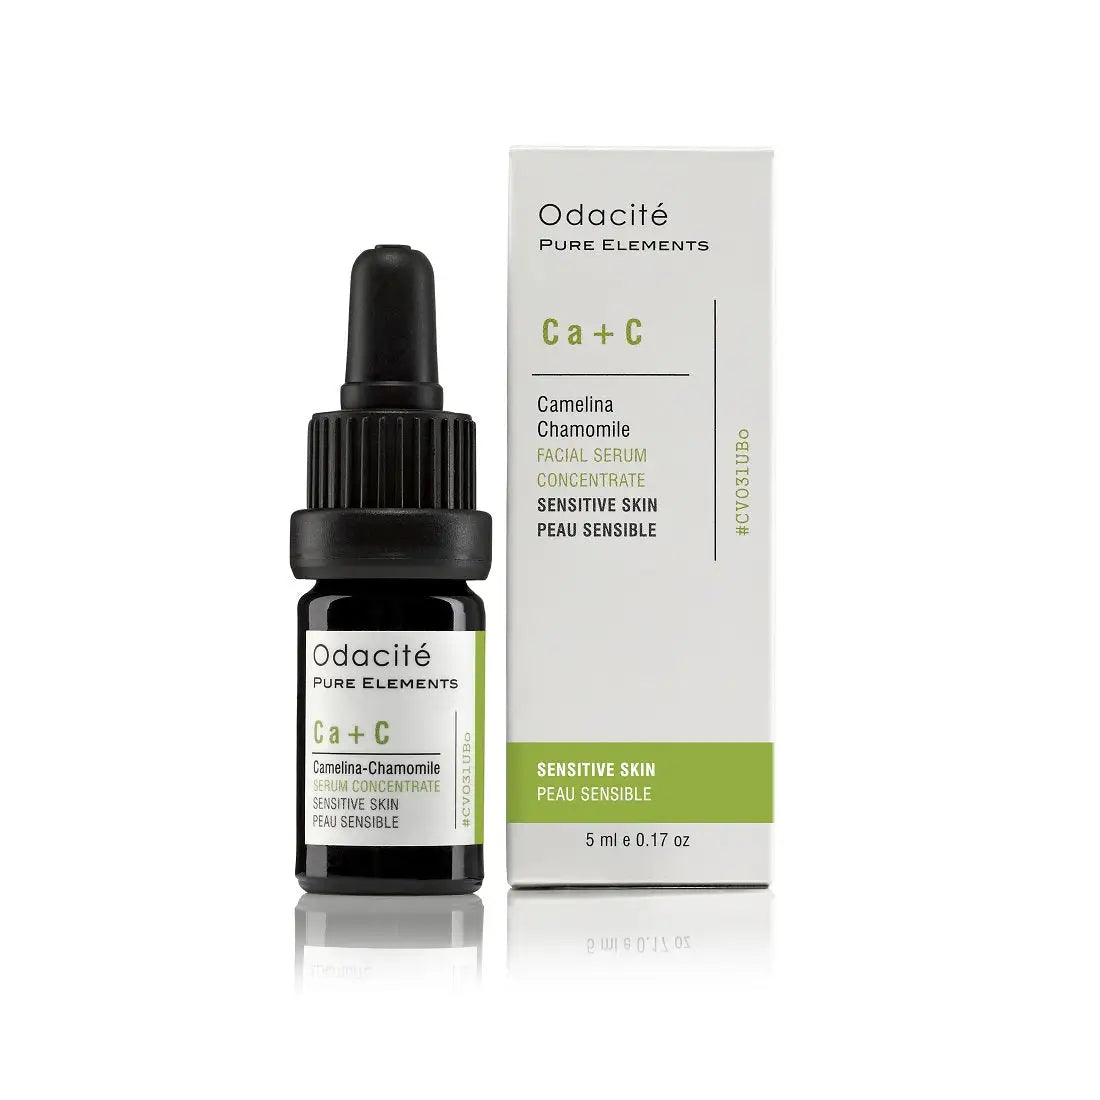 Odacite Ca+C Sensitive Skin Serum 5ml